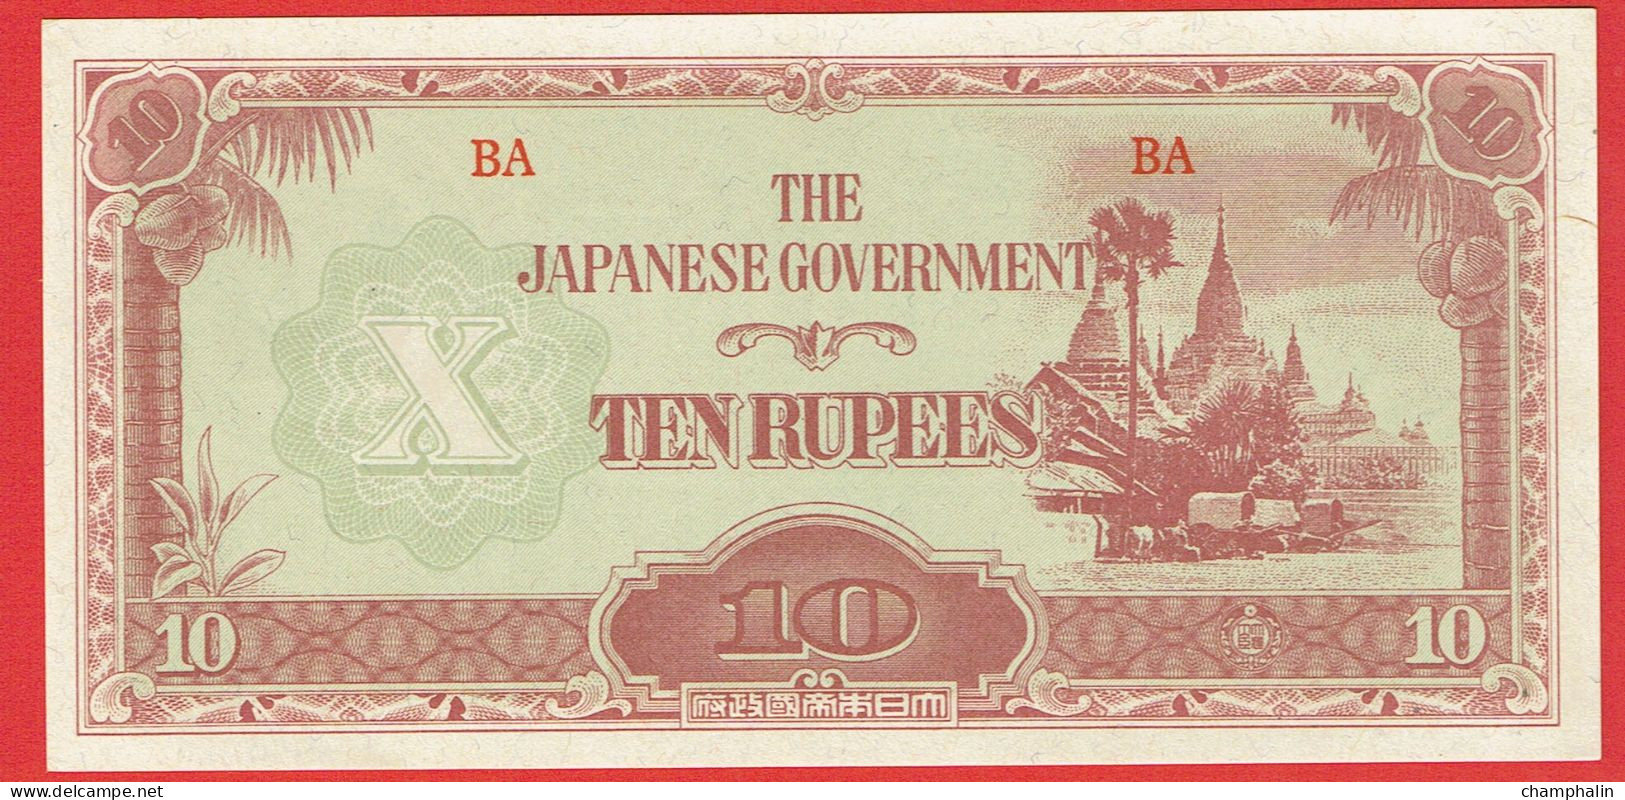 Myanmar - Birmanie - Burma - Billet De 10 Rupees - Occupation Japonaise WWII - Non Daté (1942) - P16a - Neuf - Myanmar